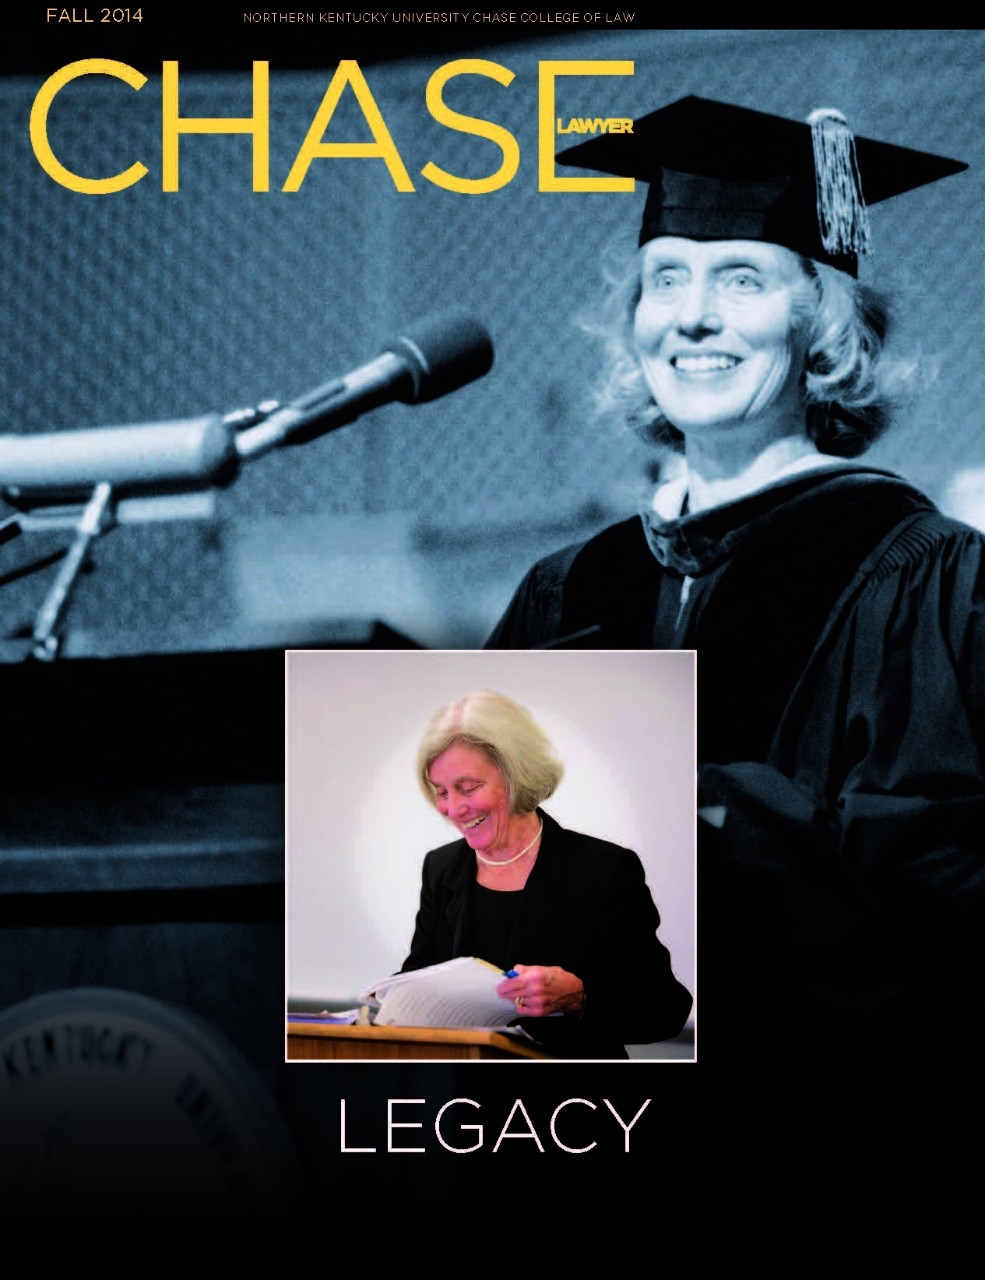 Chase Alumni Magazine Fall 2014